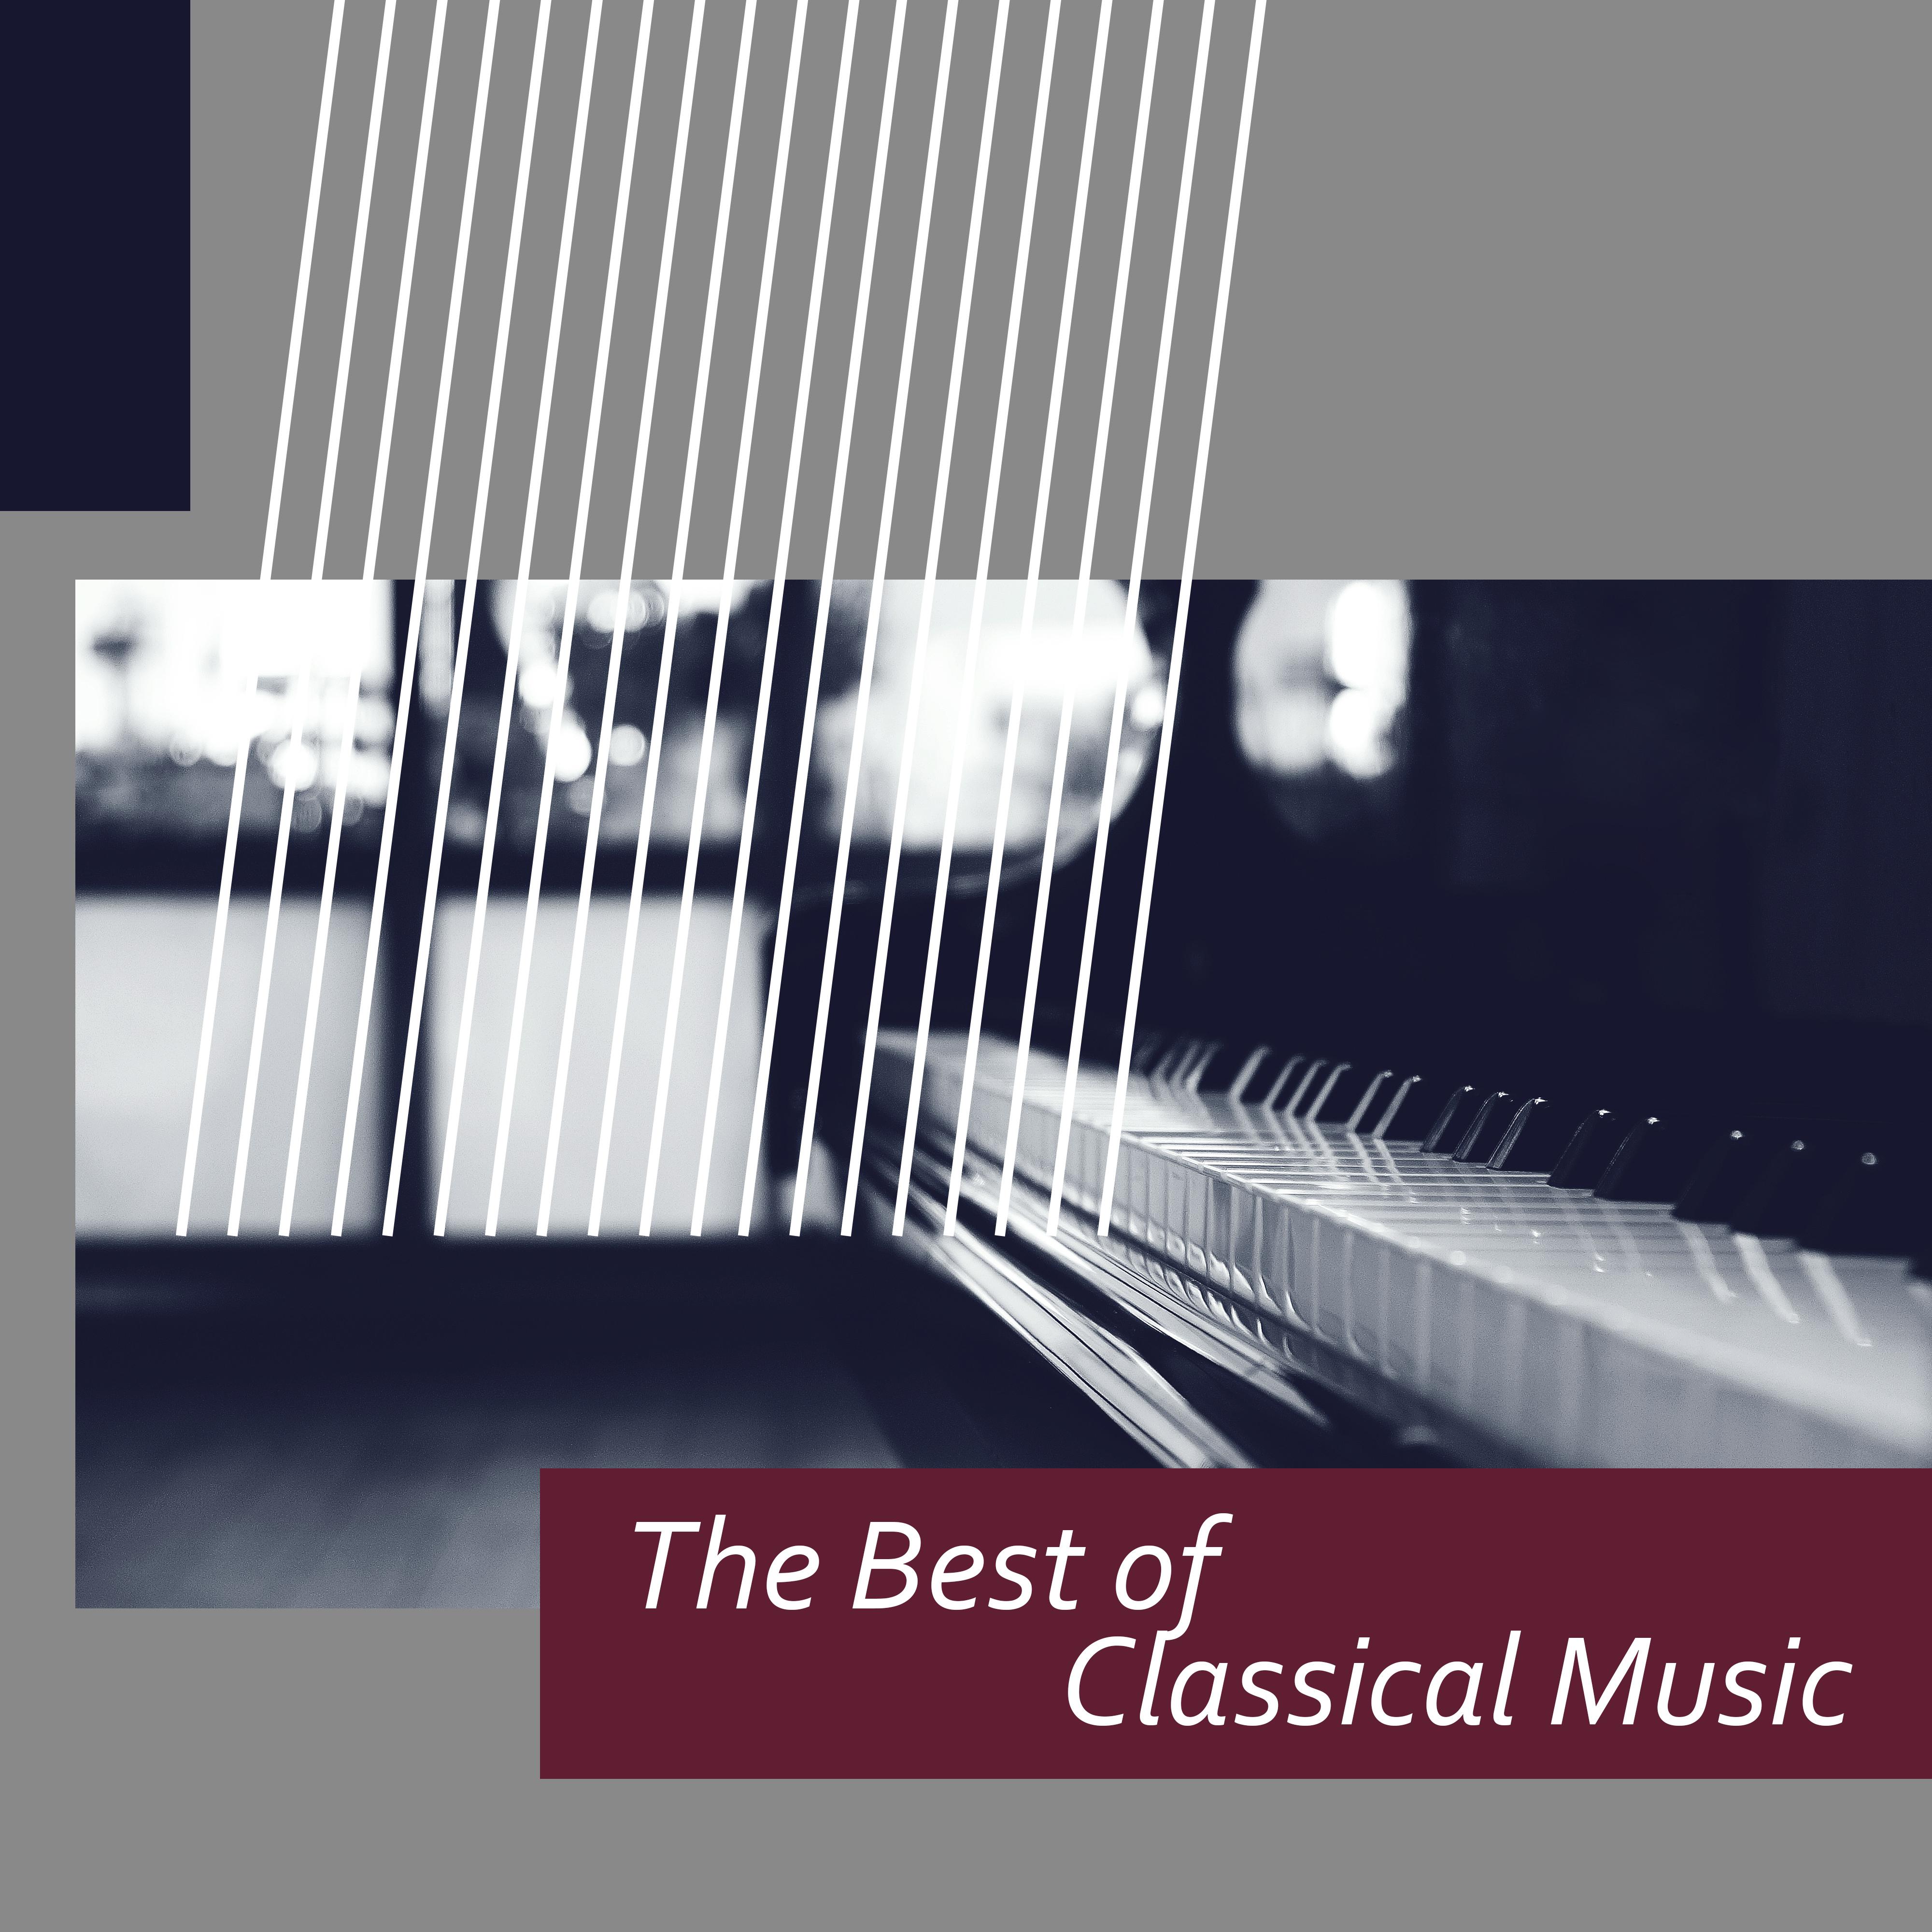 The Best of Classical Music  Fre de ric Chopin, Wolfgang Amadeus Mozart, Franz Schubert